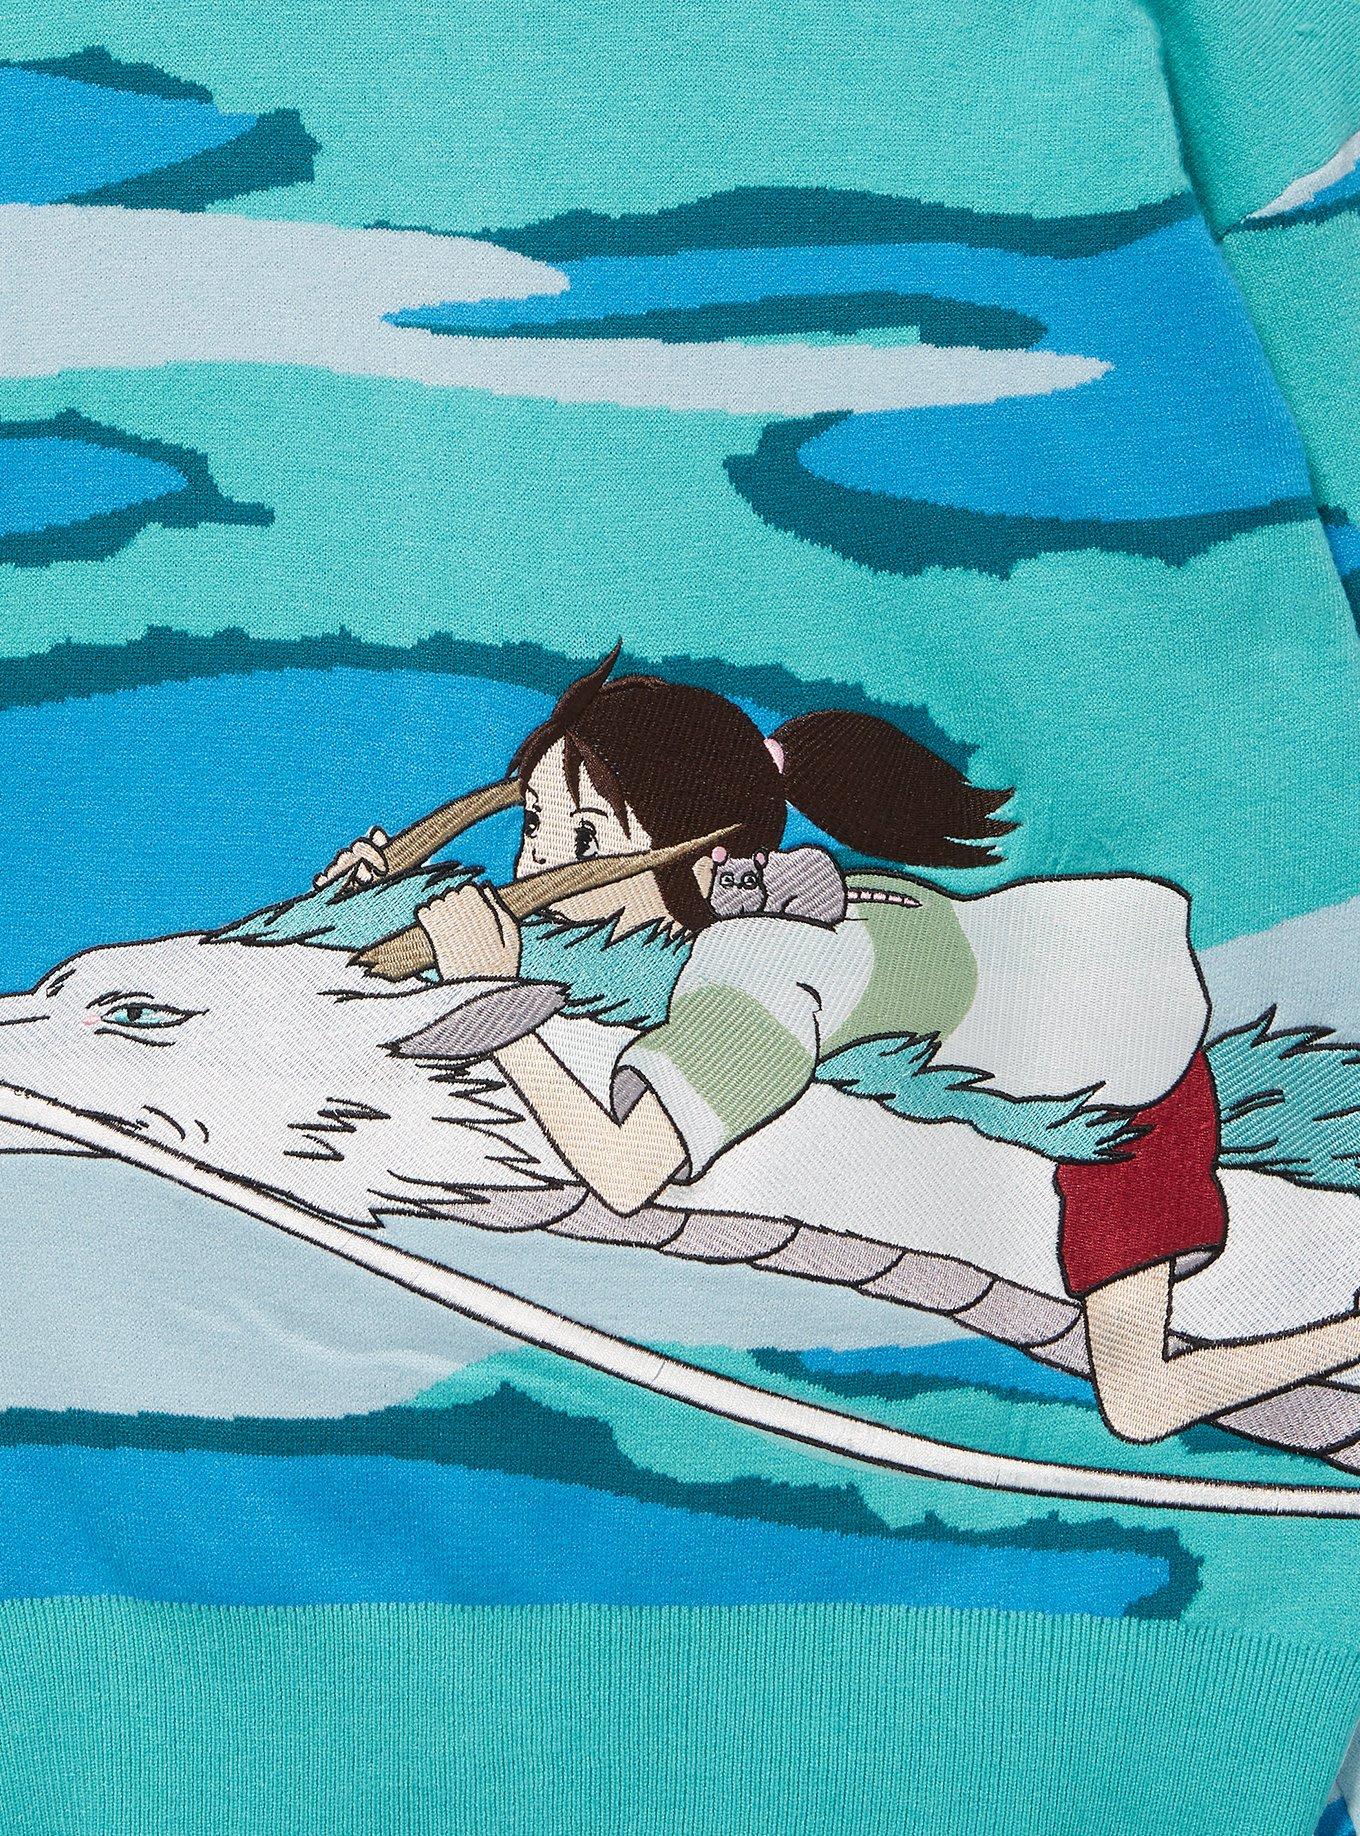 Studio Ghibli Spirited Away Chihiro & Haku Scenic Plus Size Cardigan - BoxLunch Exclusive, MULTI, alternate